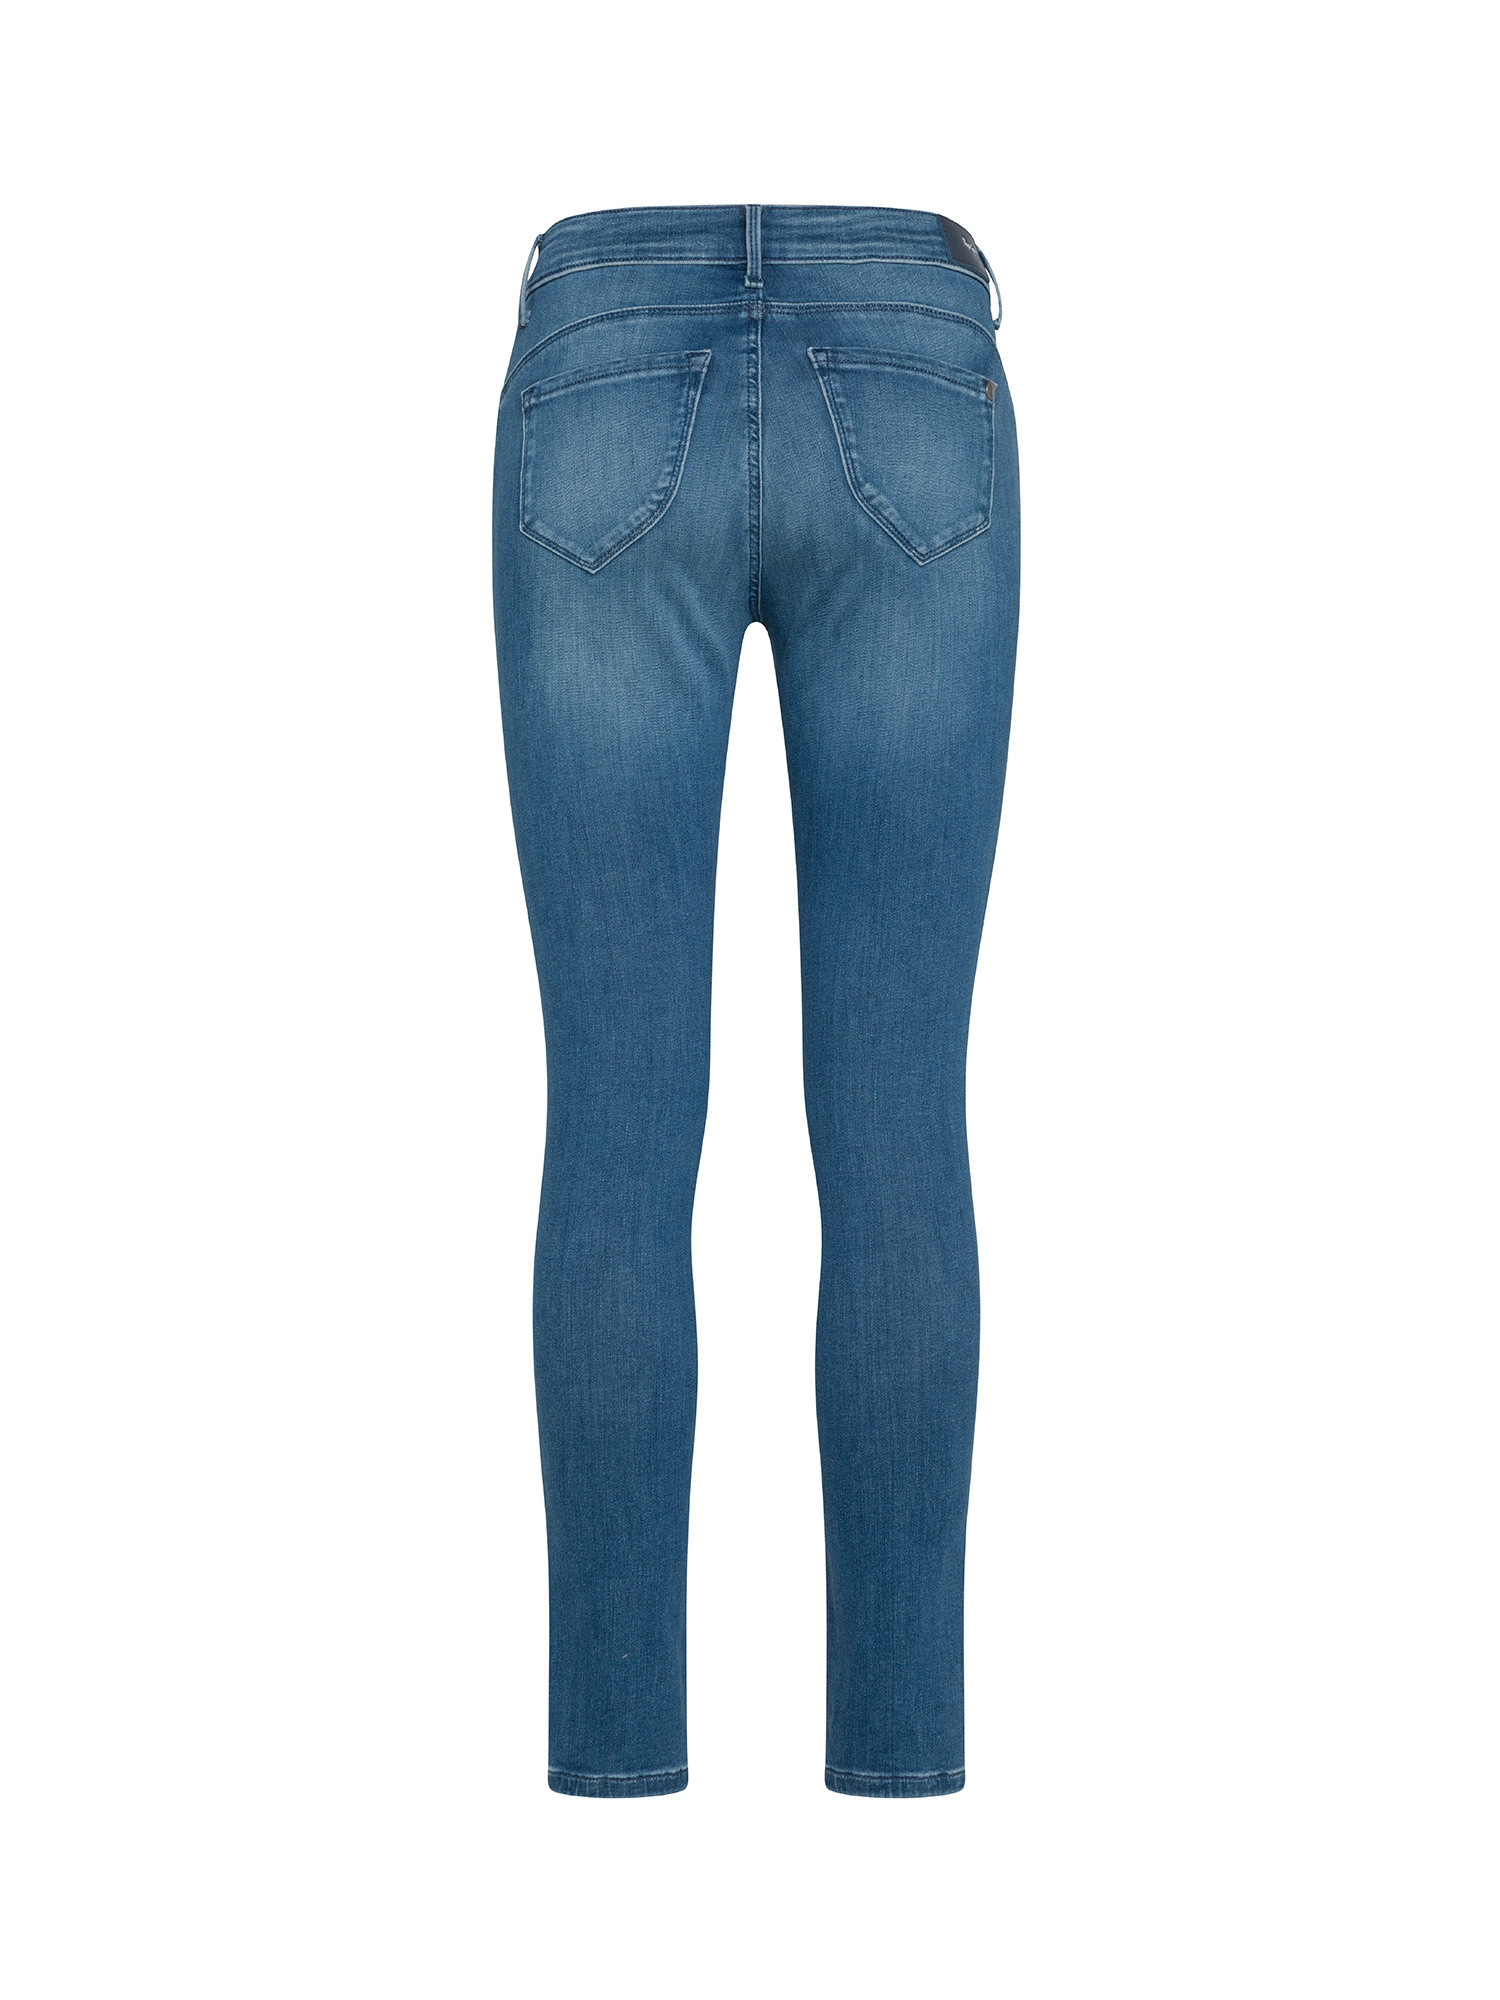 Pepe Jeans - Five pocket jeans, Denim, large image number 1